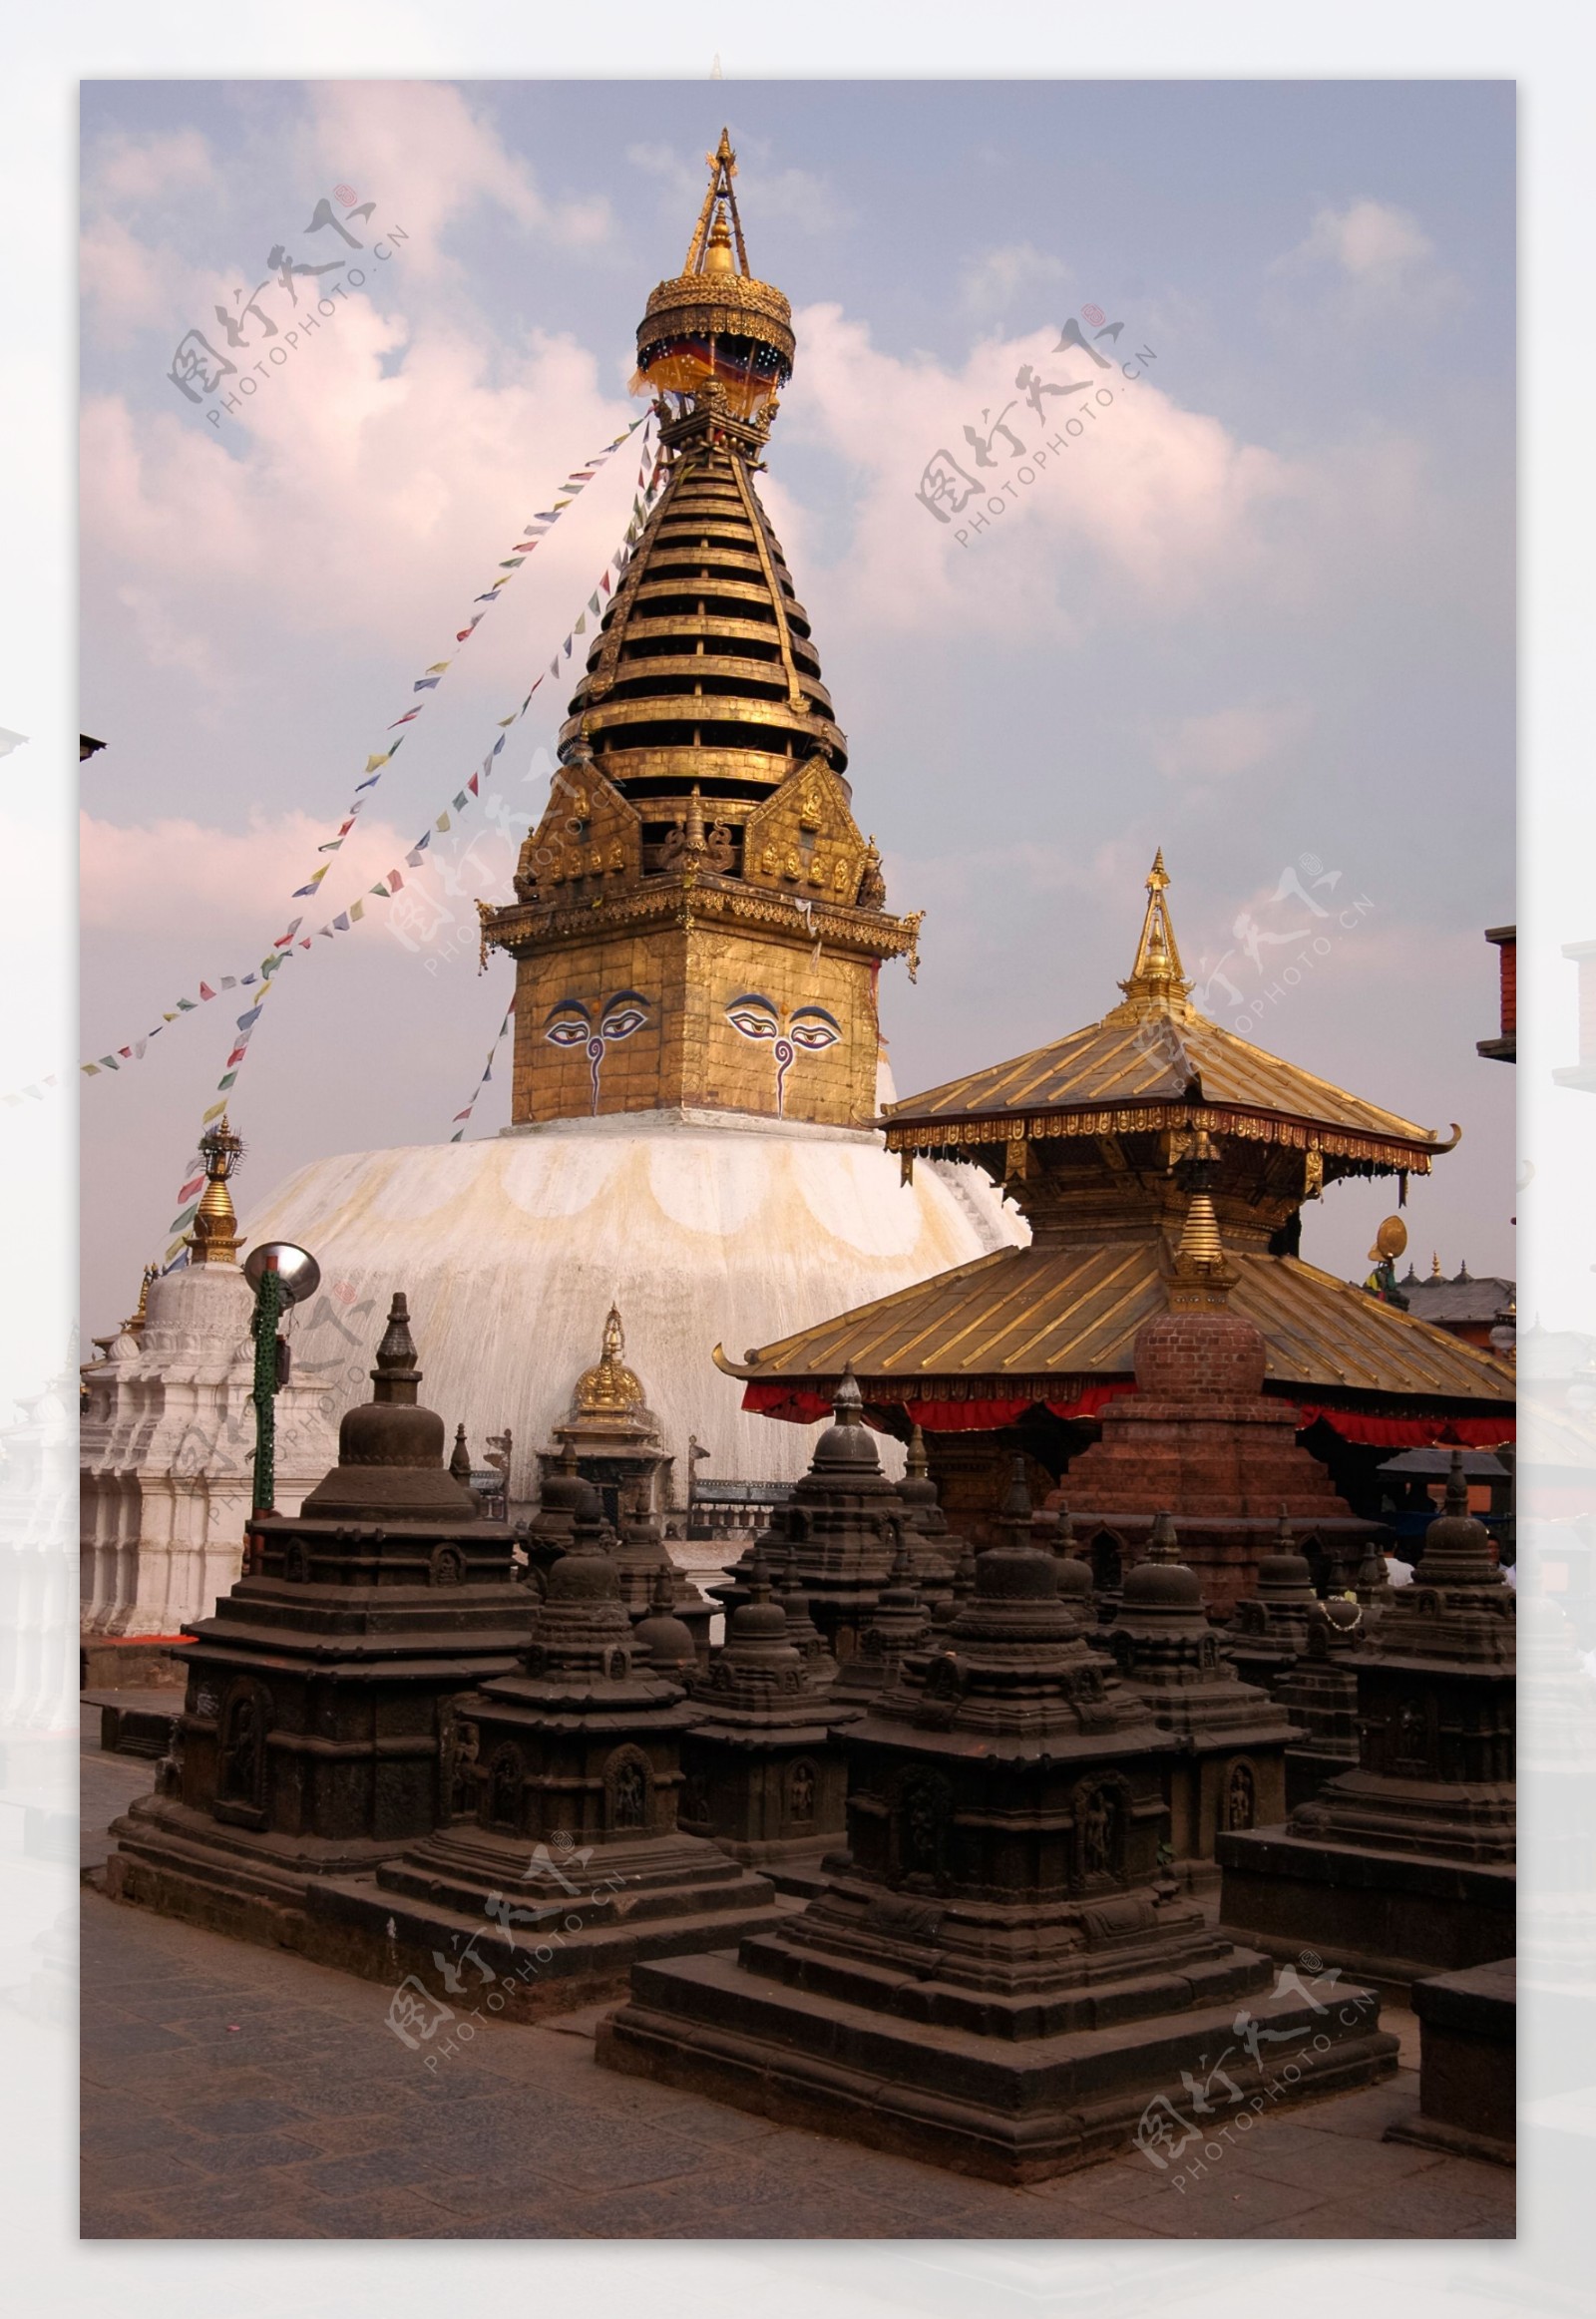 尼泊尔宗教寺庙